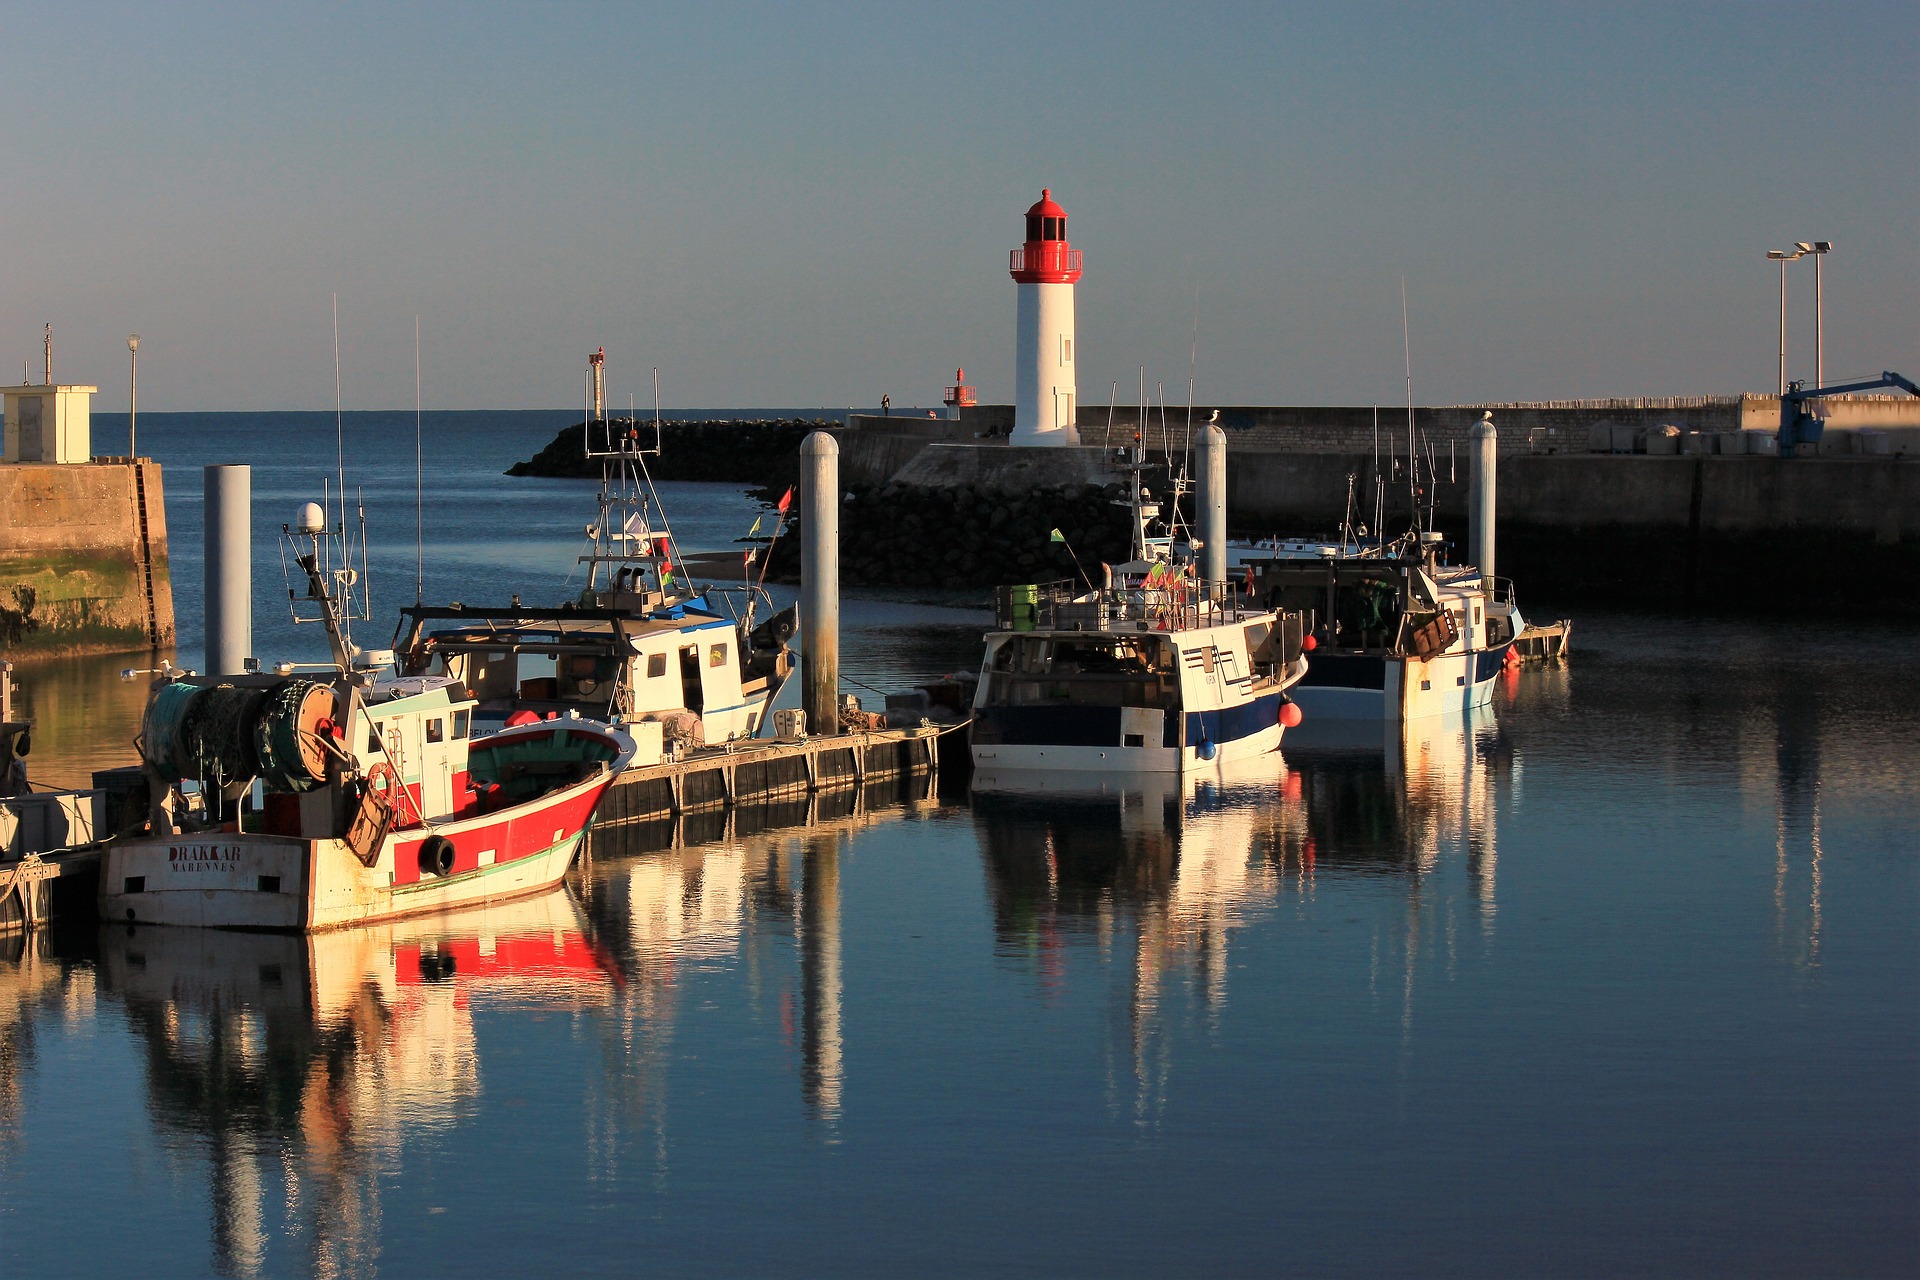 L'île d'Oléron et ses bateaux de pêche. Crédit photo @palikaojm - Pixabay